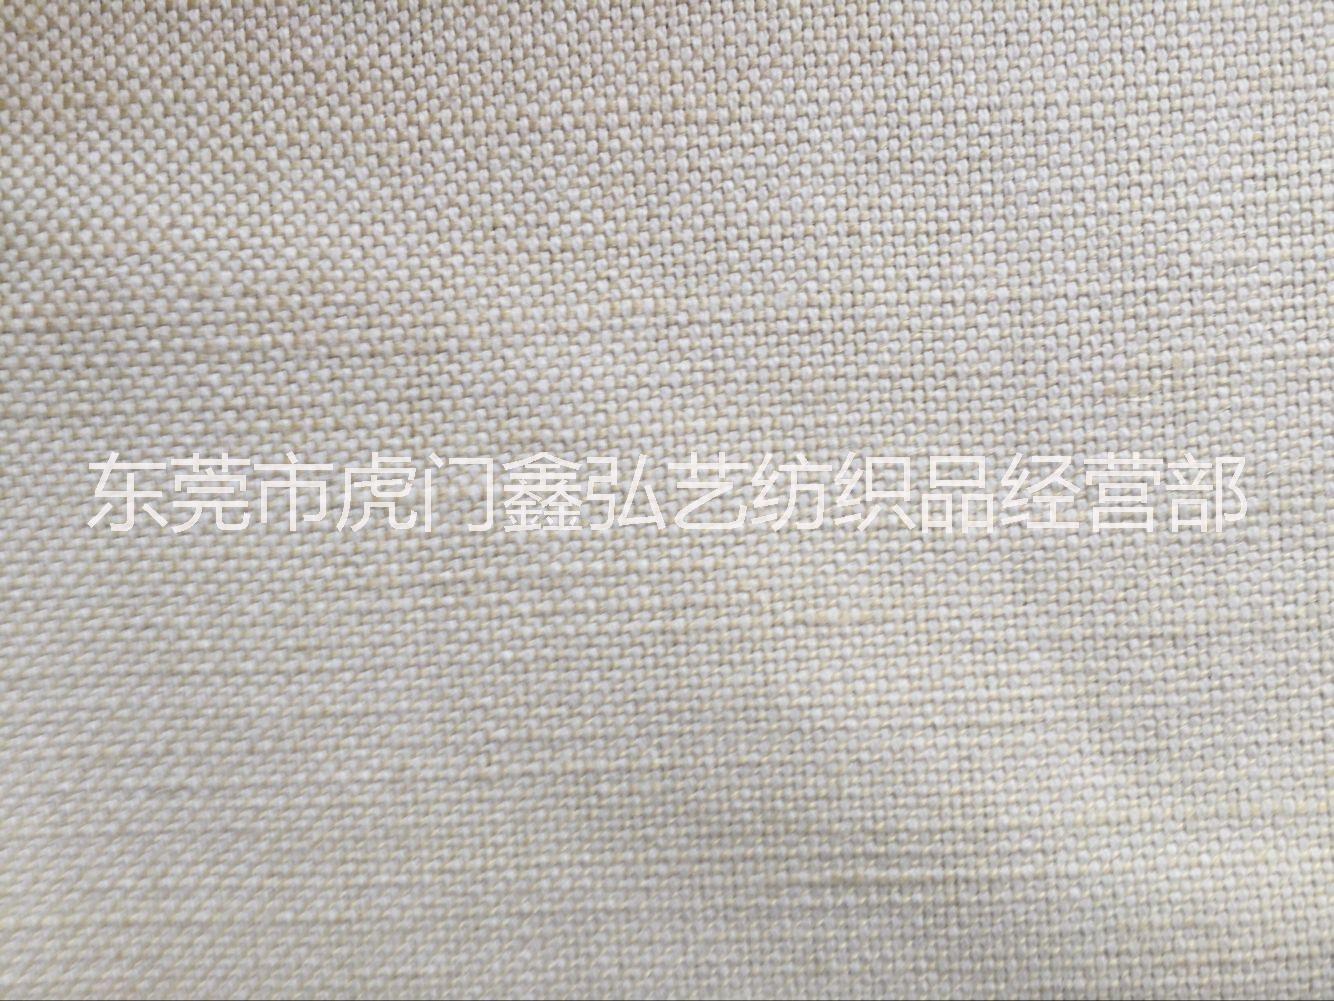 21支黄麻【厂家直销】麻棉交织布 厚重麻布 沙发面料 箱包 工艺